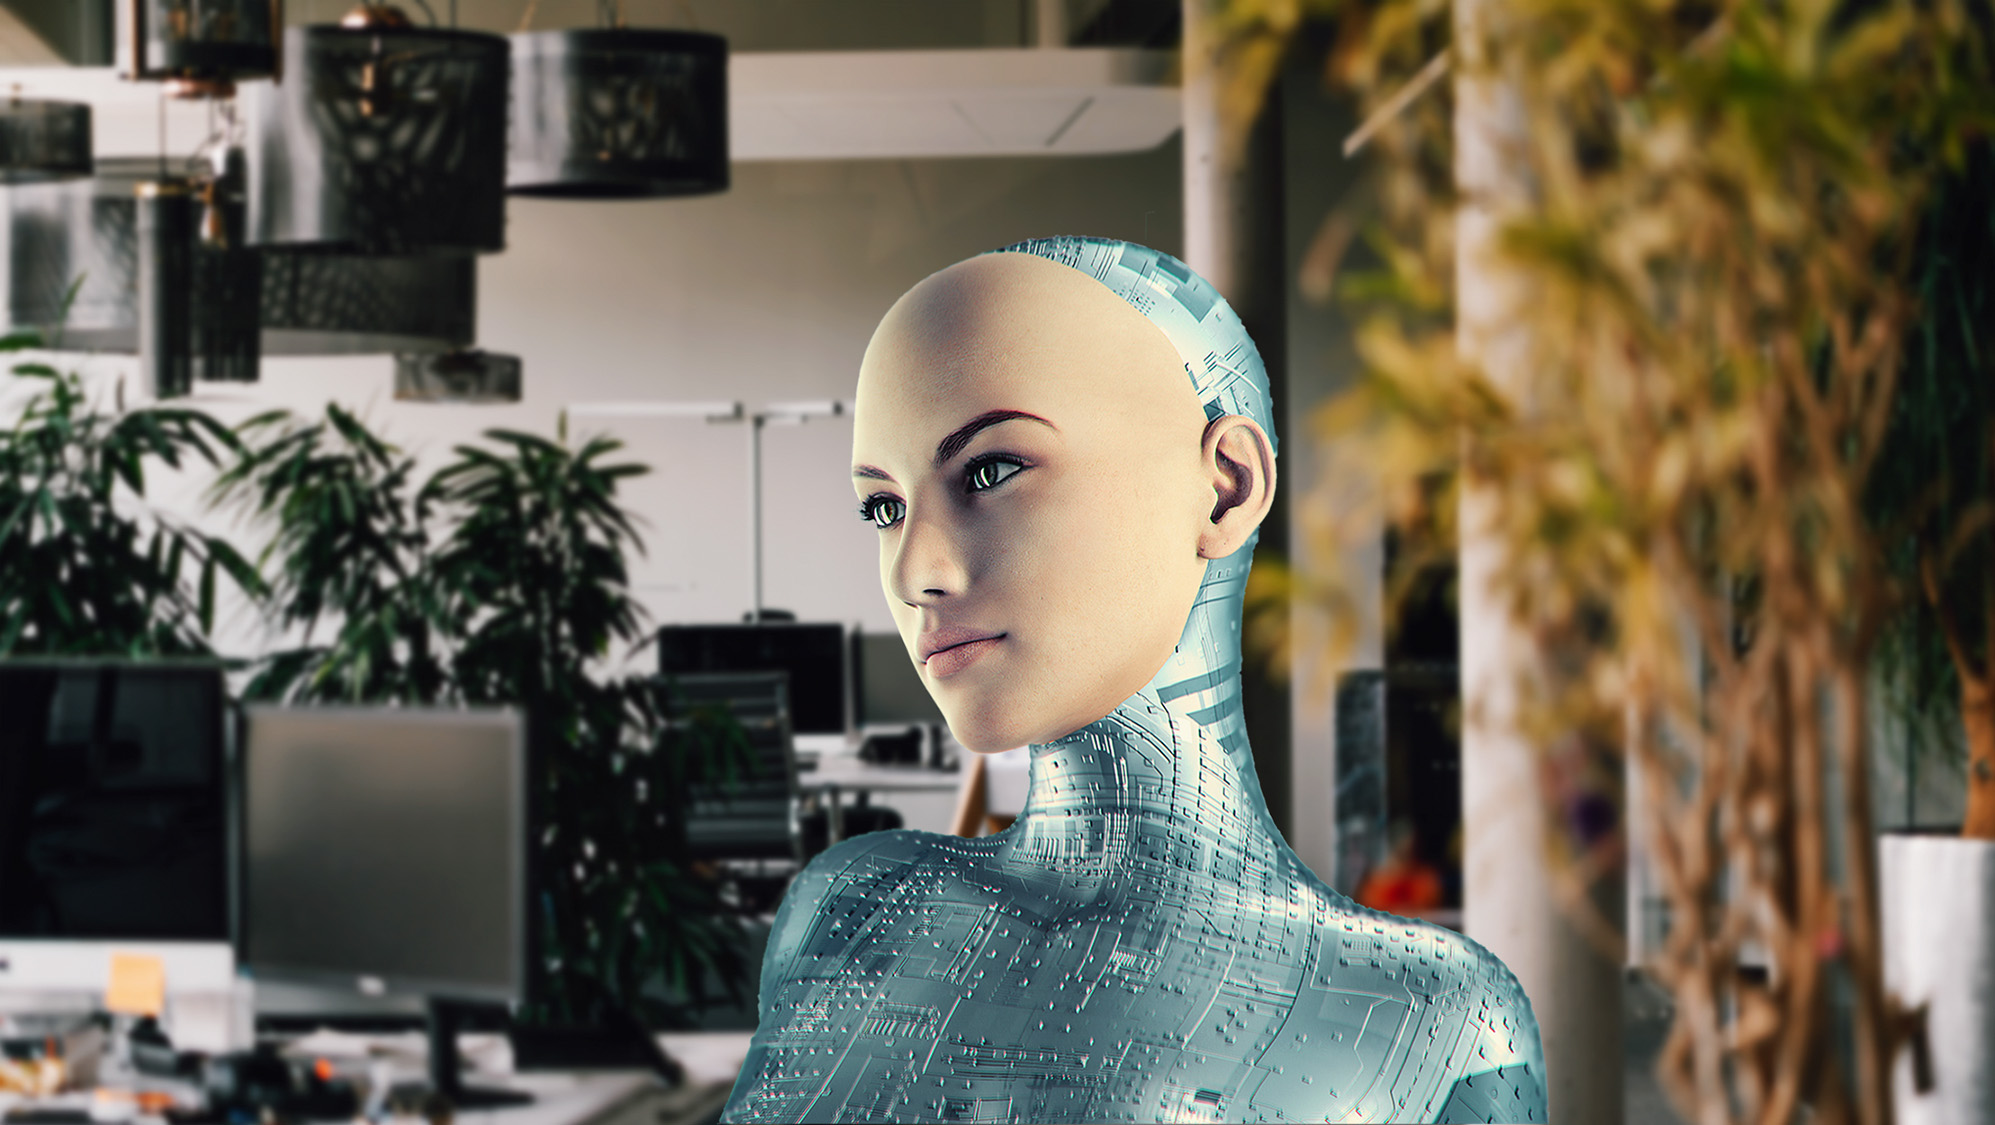 Künstliche Intelligenz in Form einer Roboterfrau, die in der Agentur steht